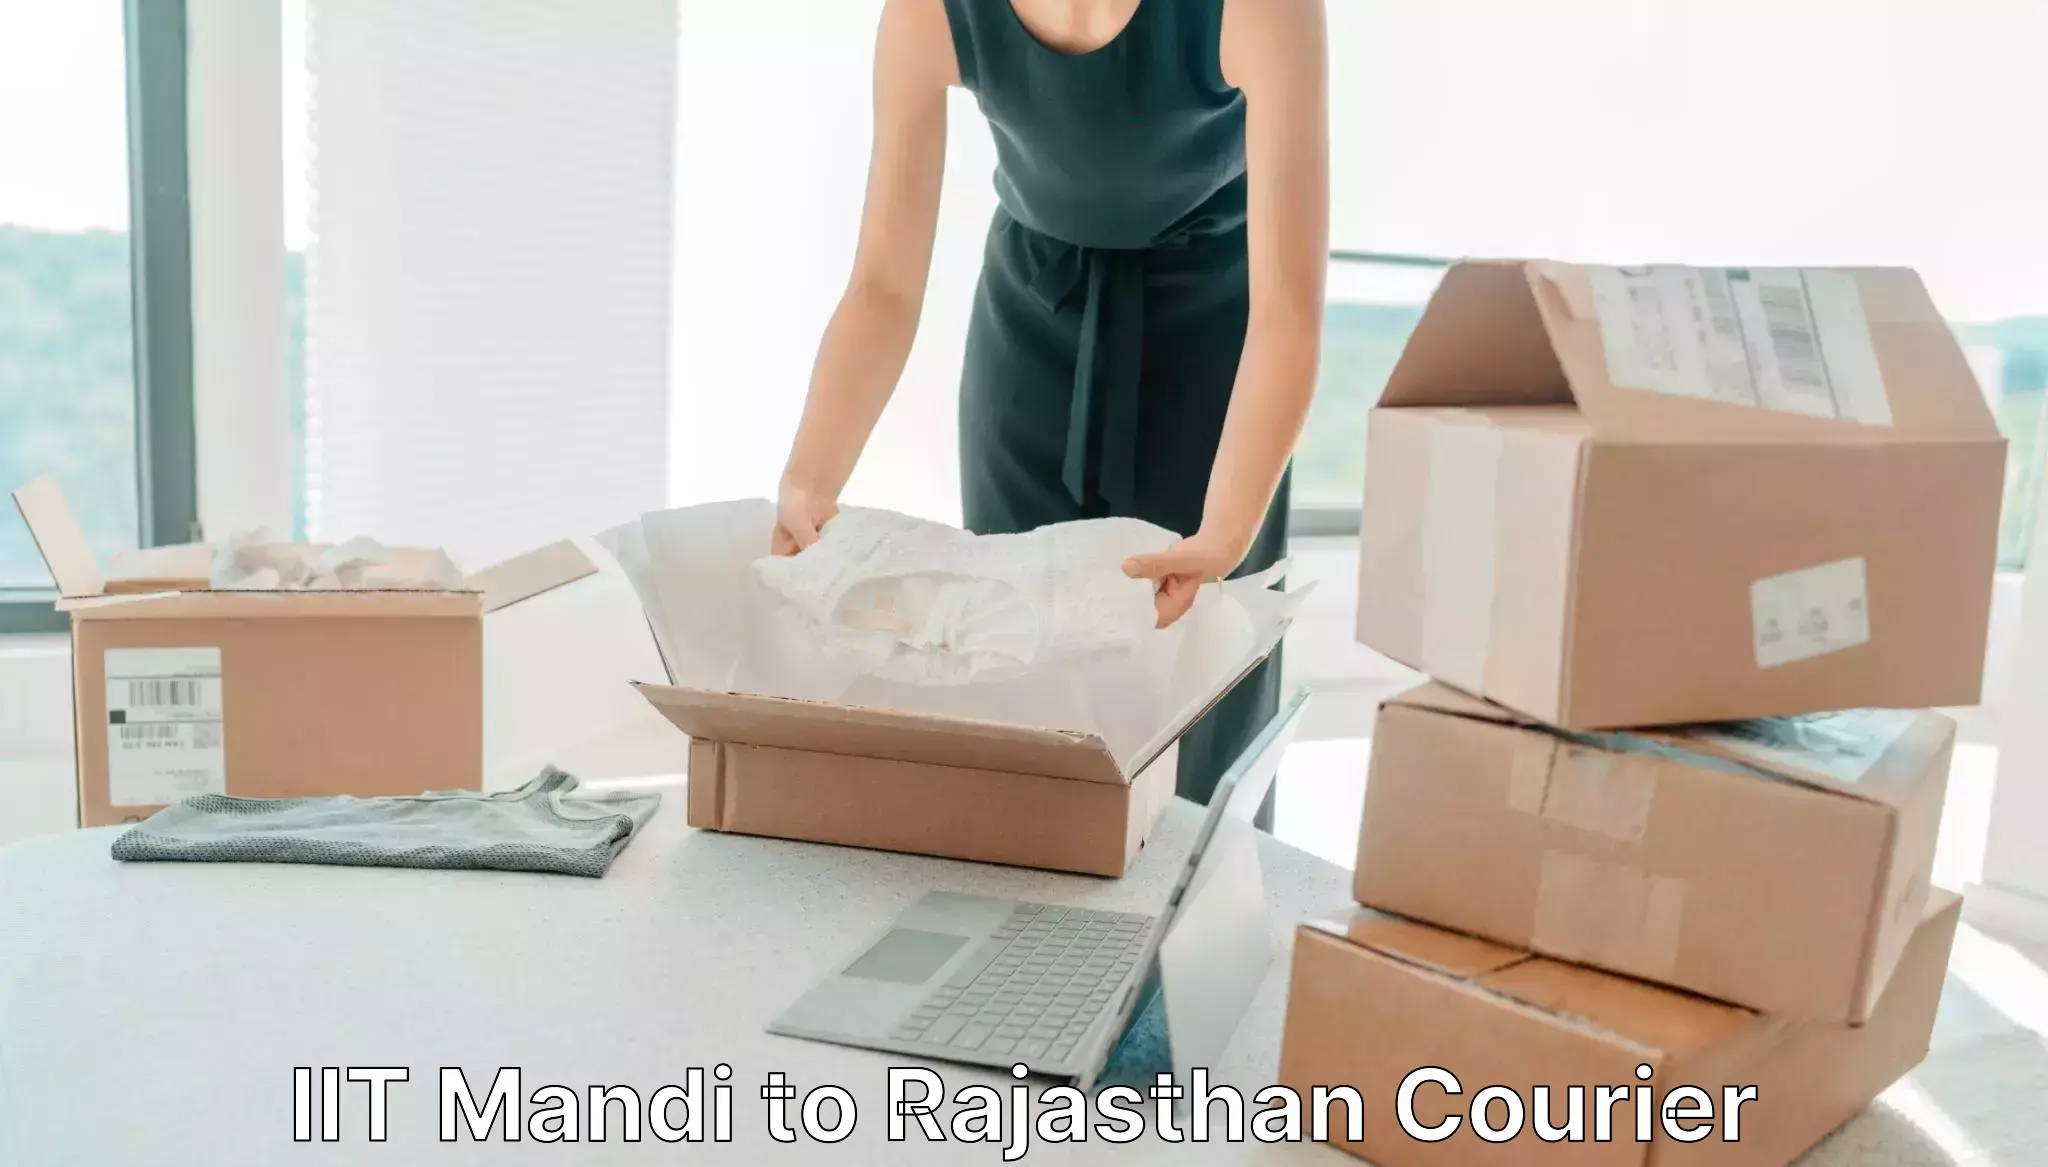 Doorstep delivery service IIT Mandi to Bayana